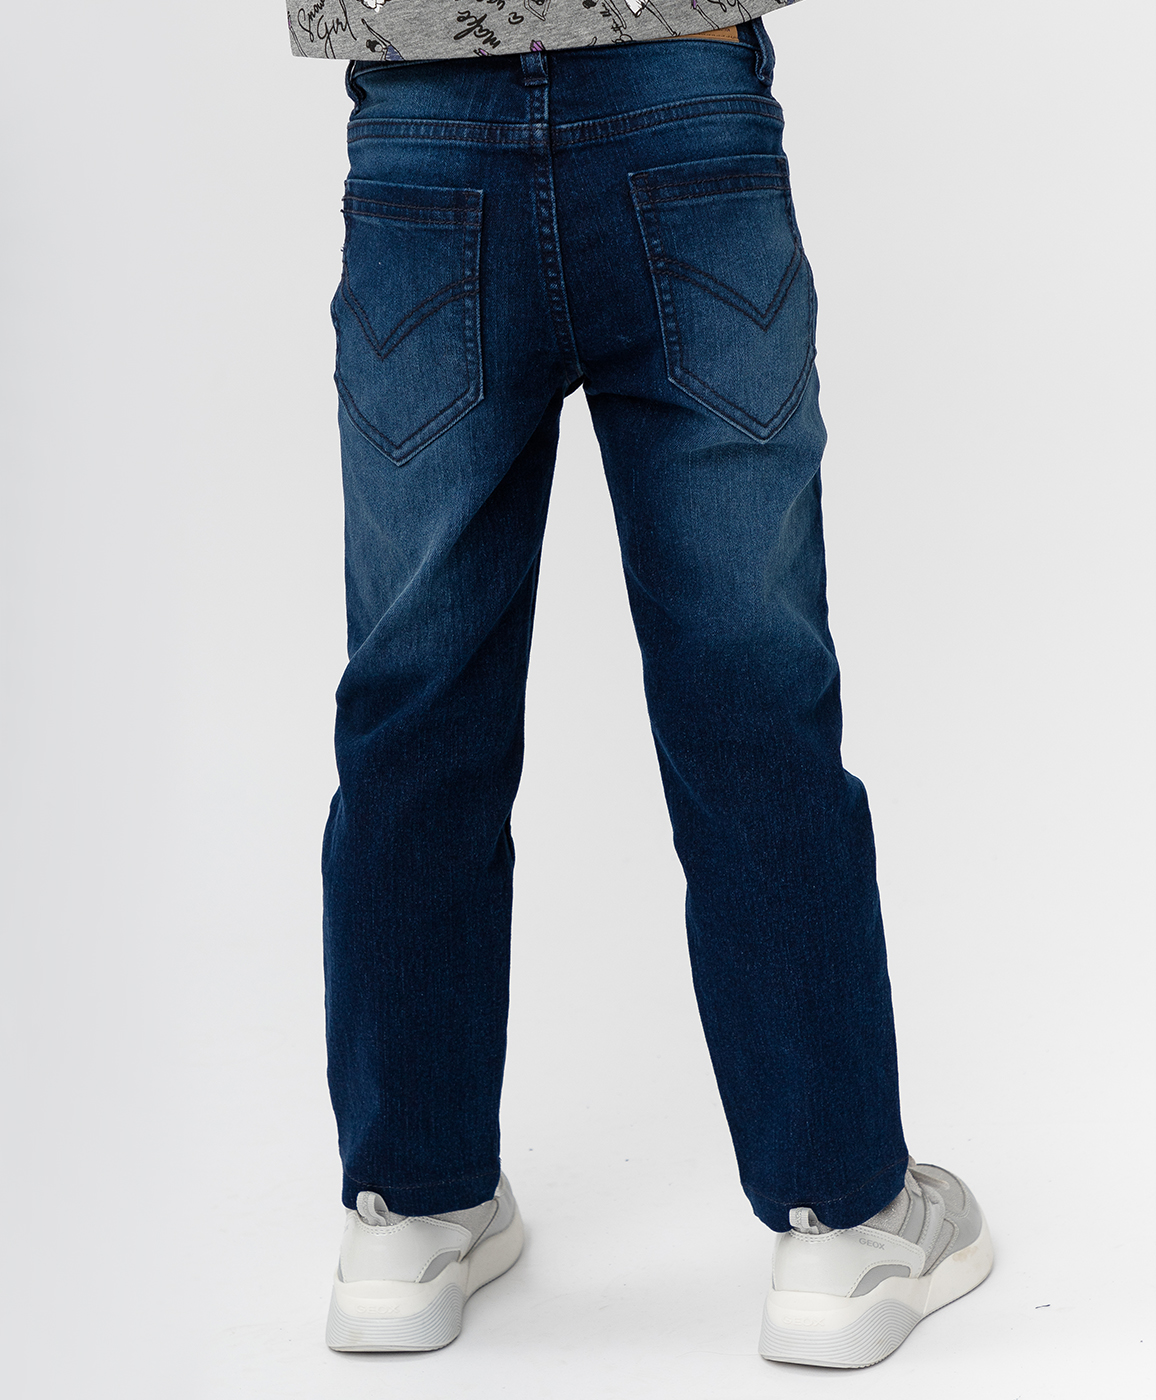 Темно-синие джинсы Button Blue 220BBGMC6302D500, размер 116, цвет синий regular fit / прямые - фото 2